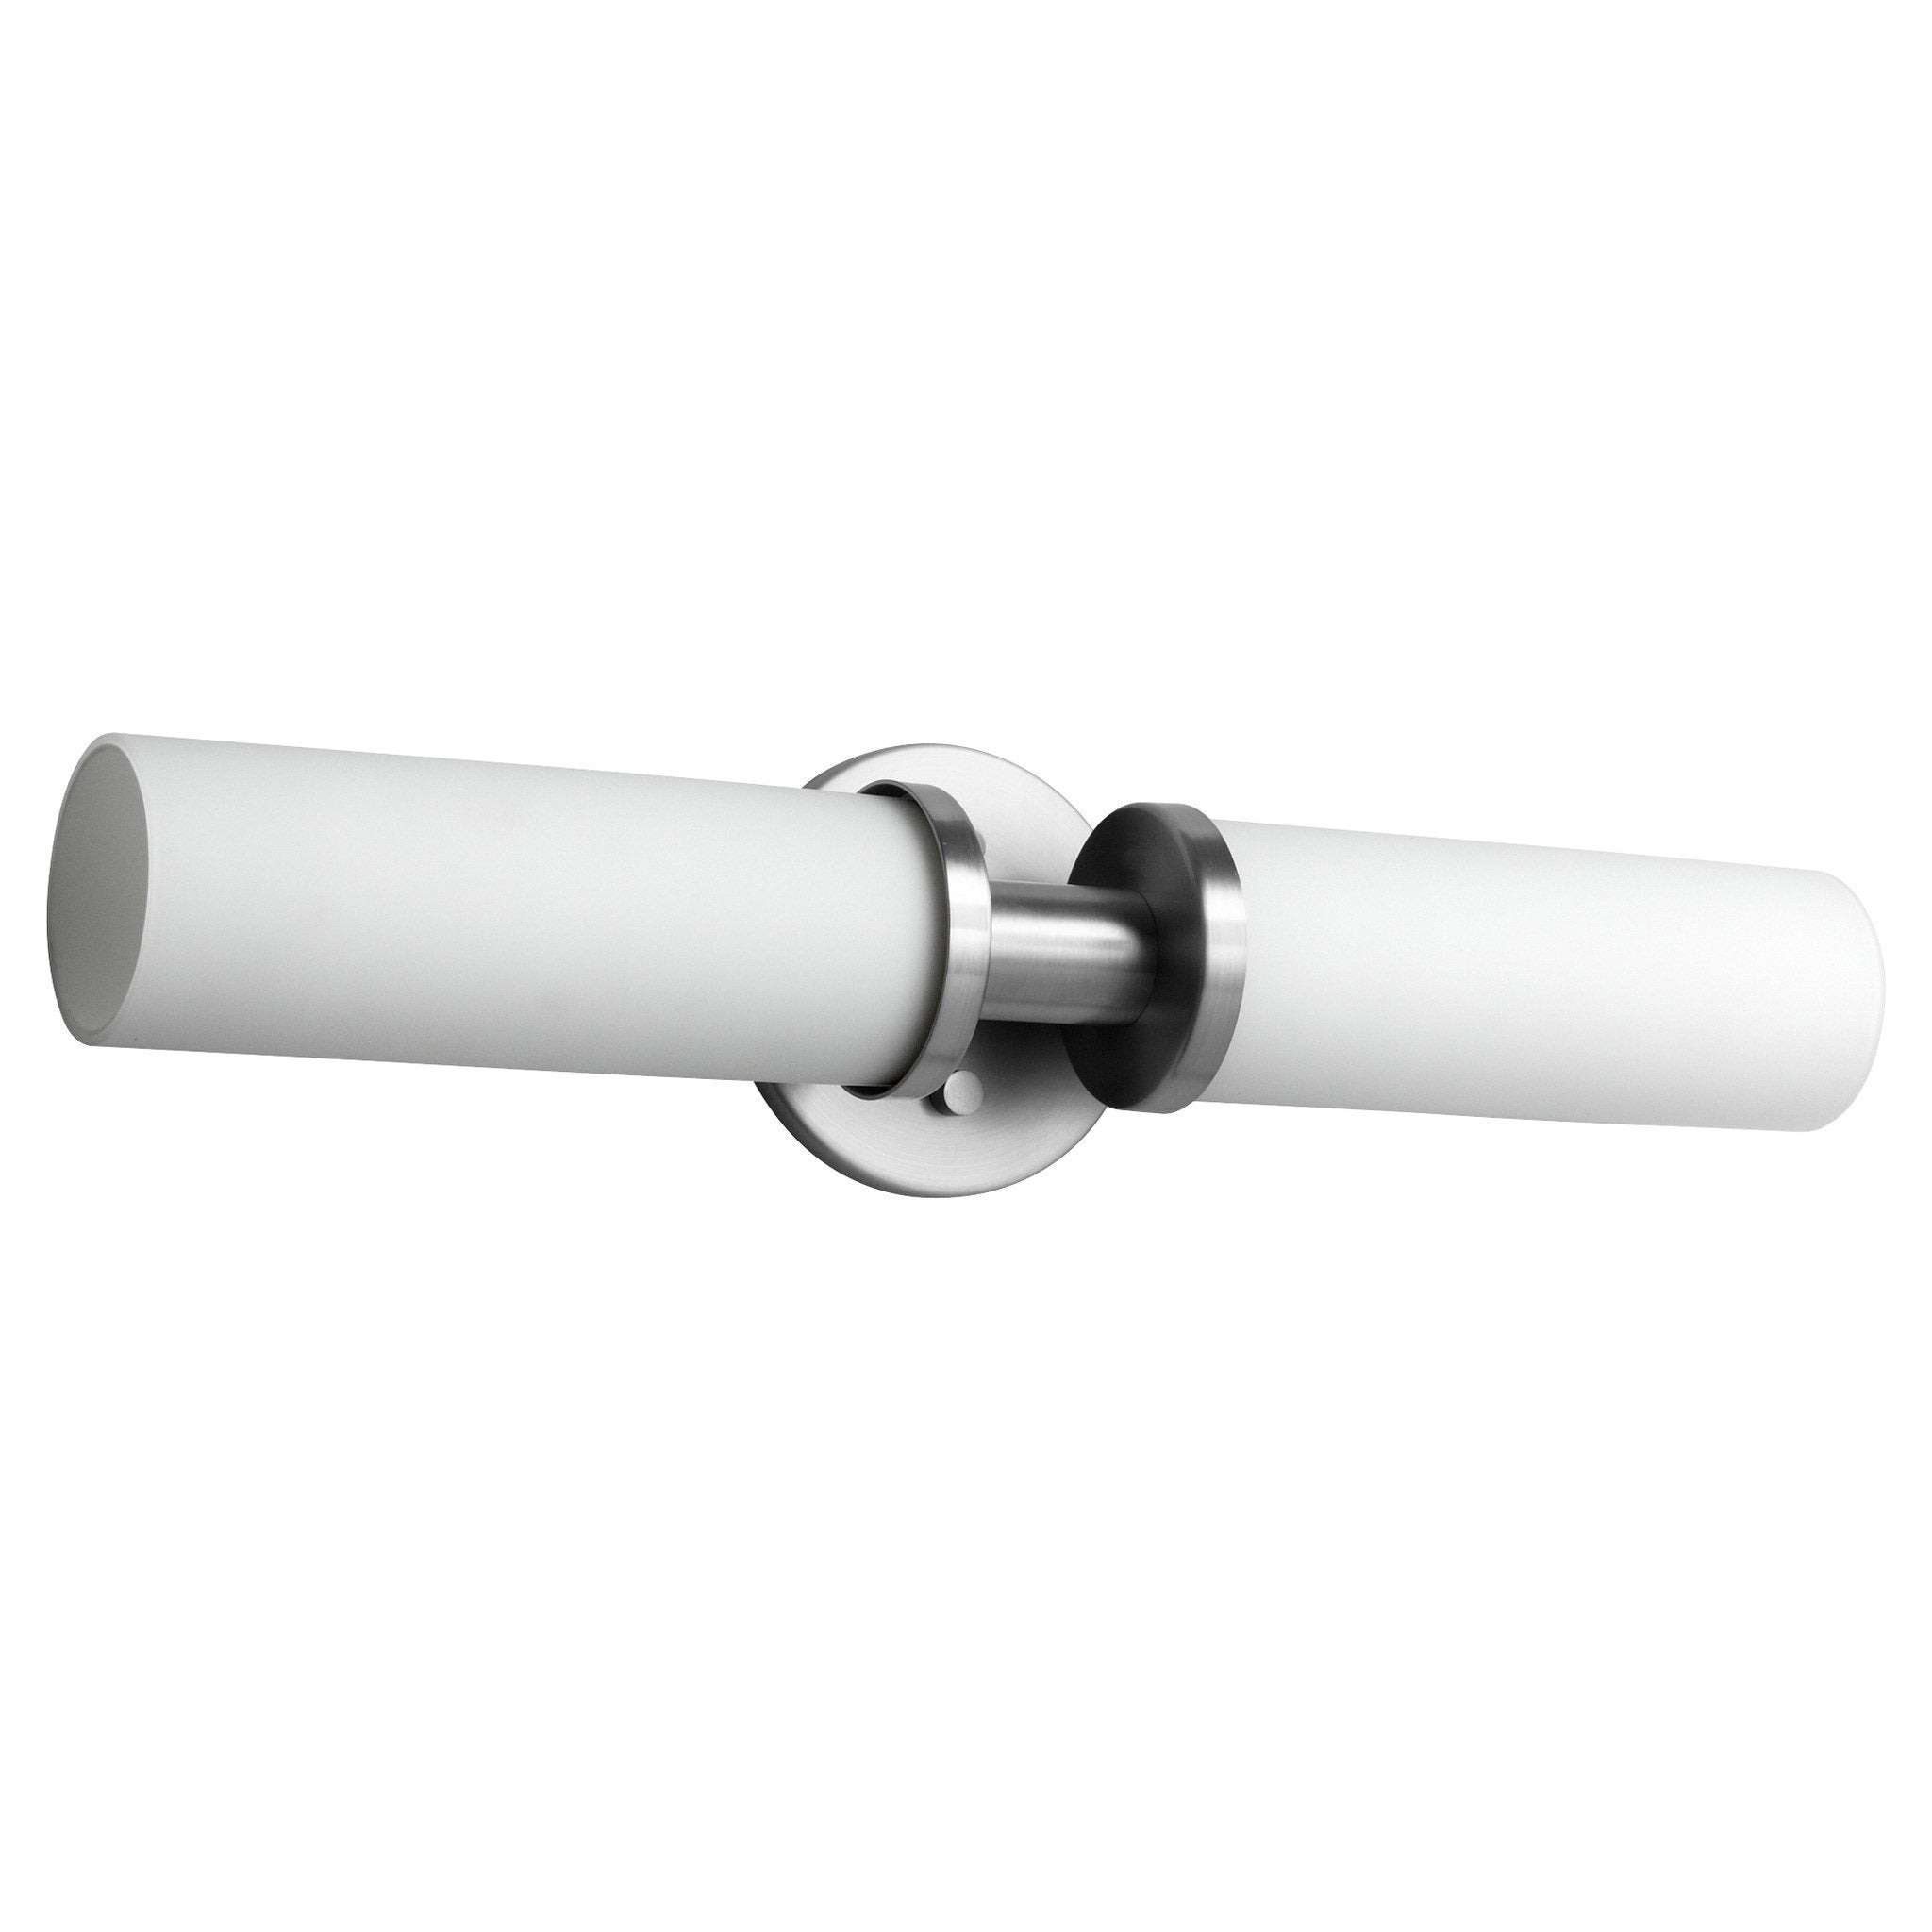 Oxygen Lighting 2-5121-124 Pebble 2 Light Inc Bathroom Lighting Fixture Vanity - Satin Nickel